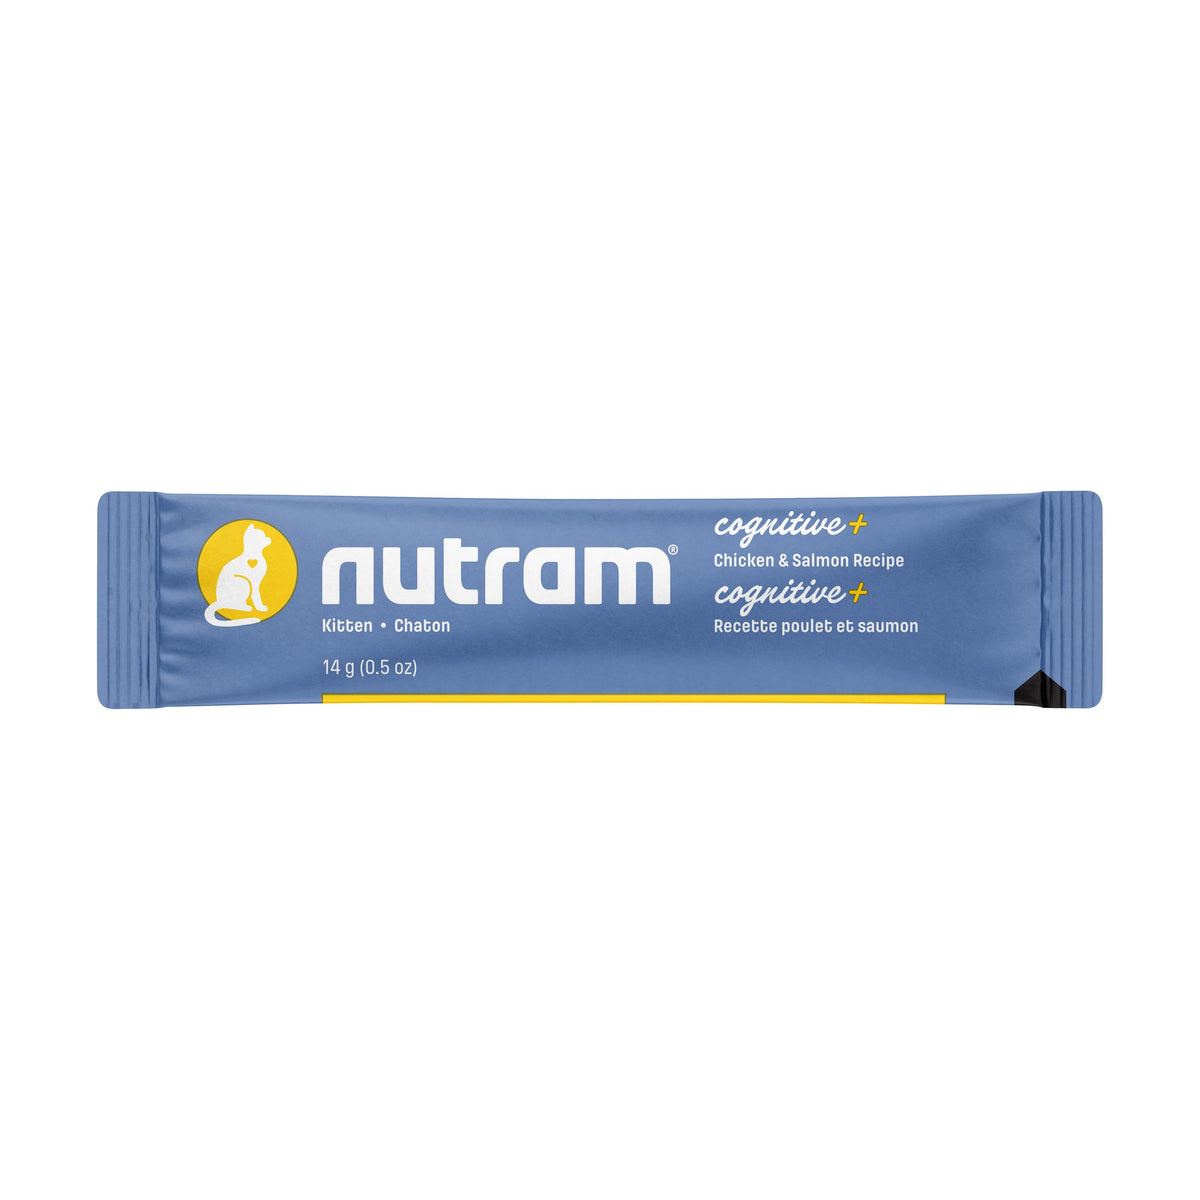 Nutram Combinaisons Optimales - Gâterie en tube pour chaton -Cognitive+ Poulet &amp; Saumon Sans Grains (2oz)